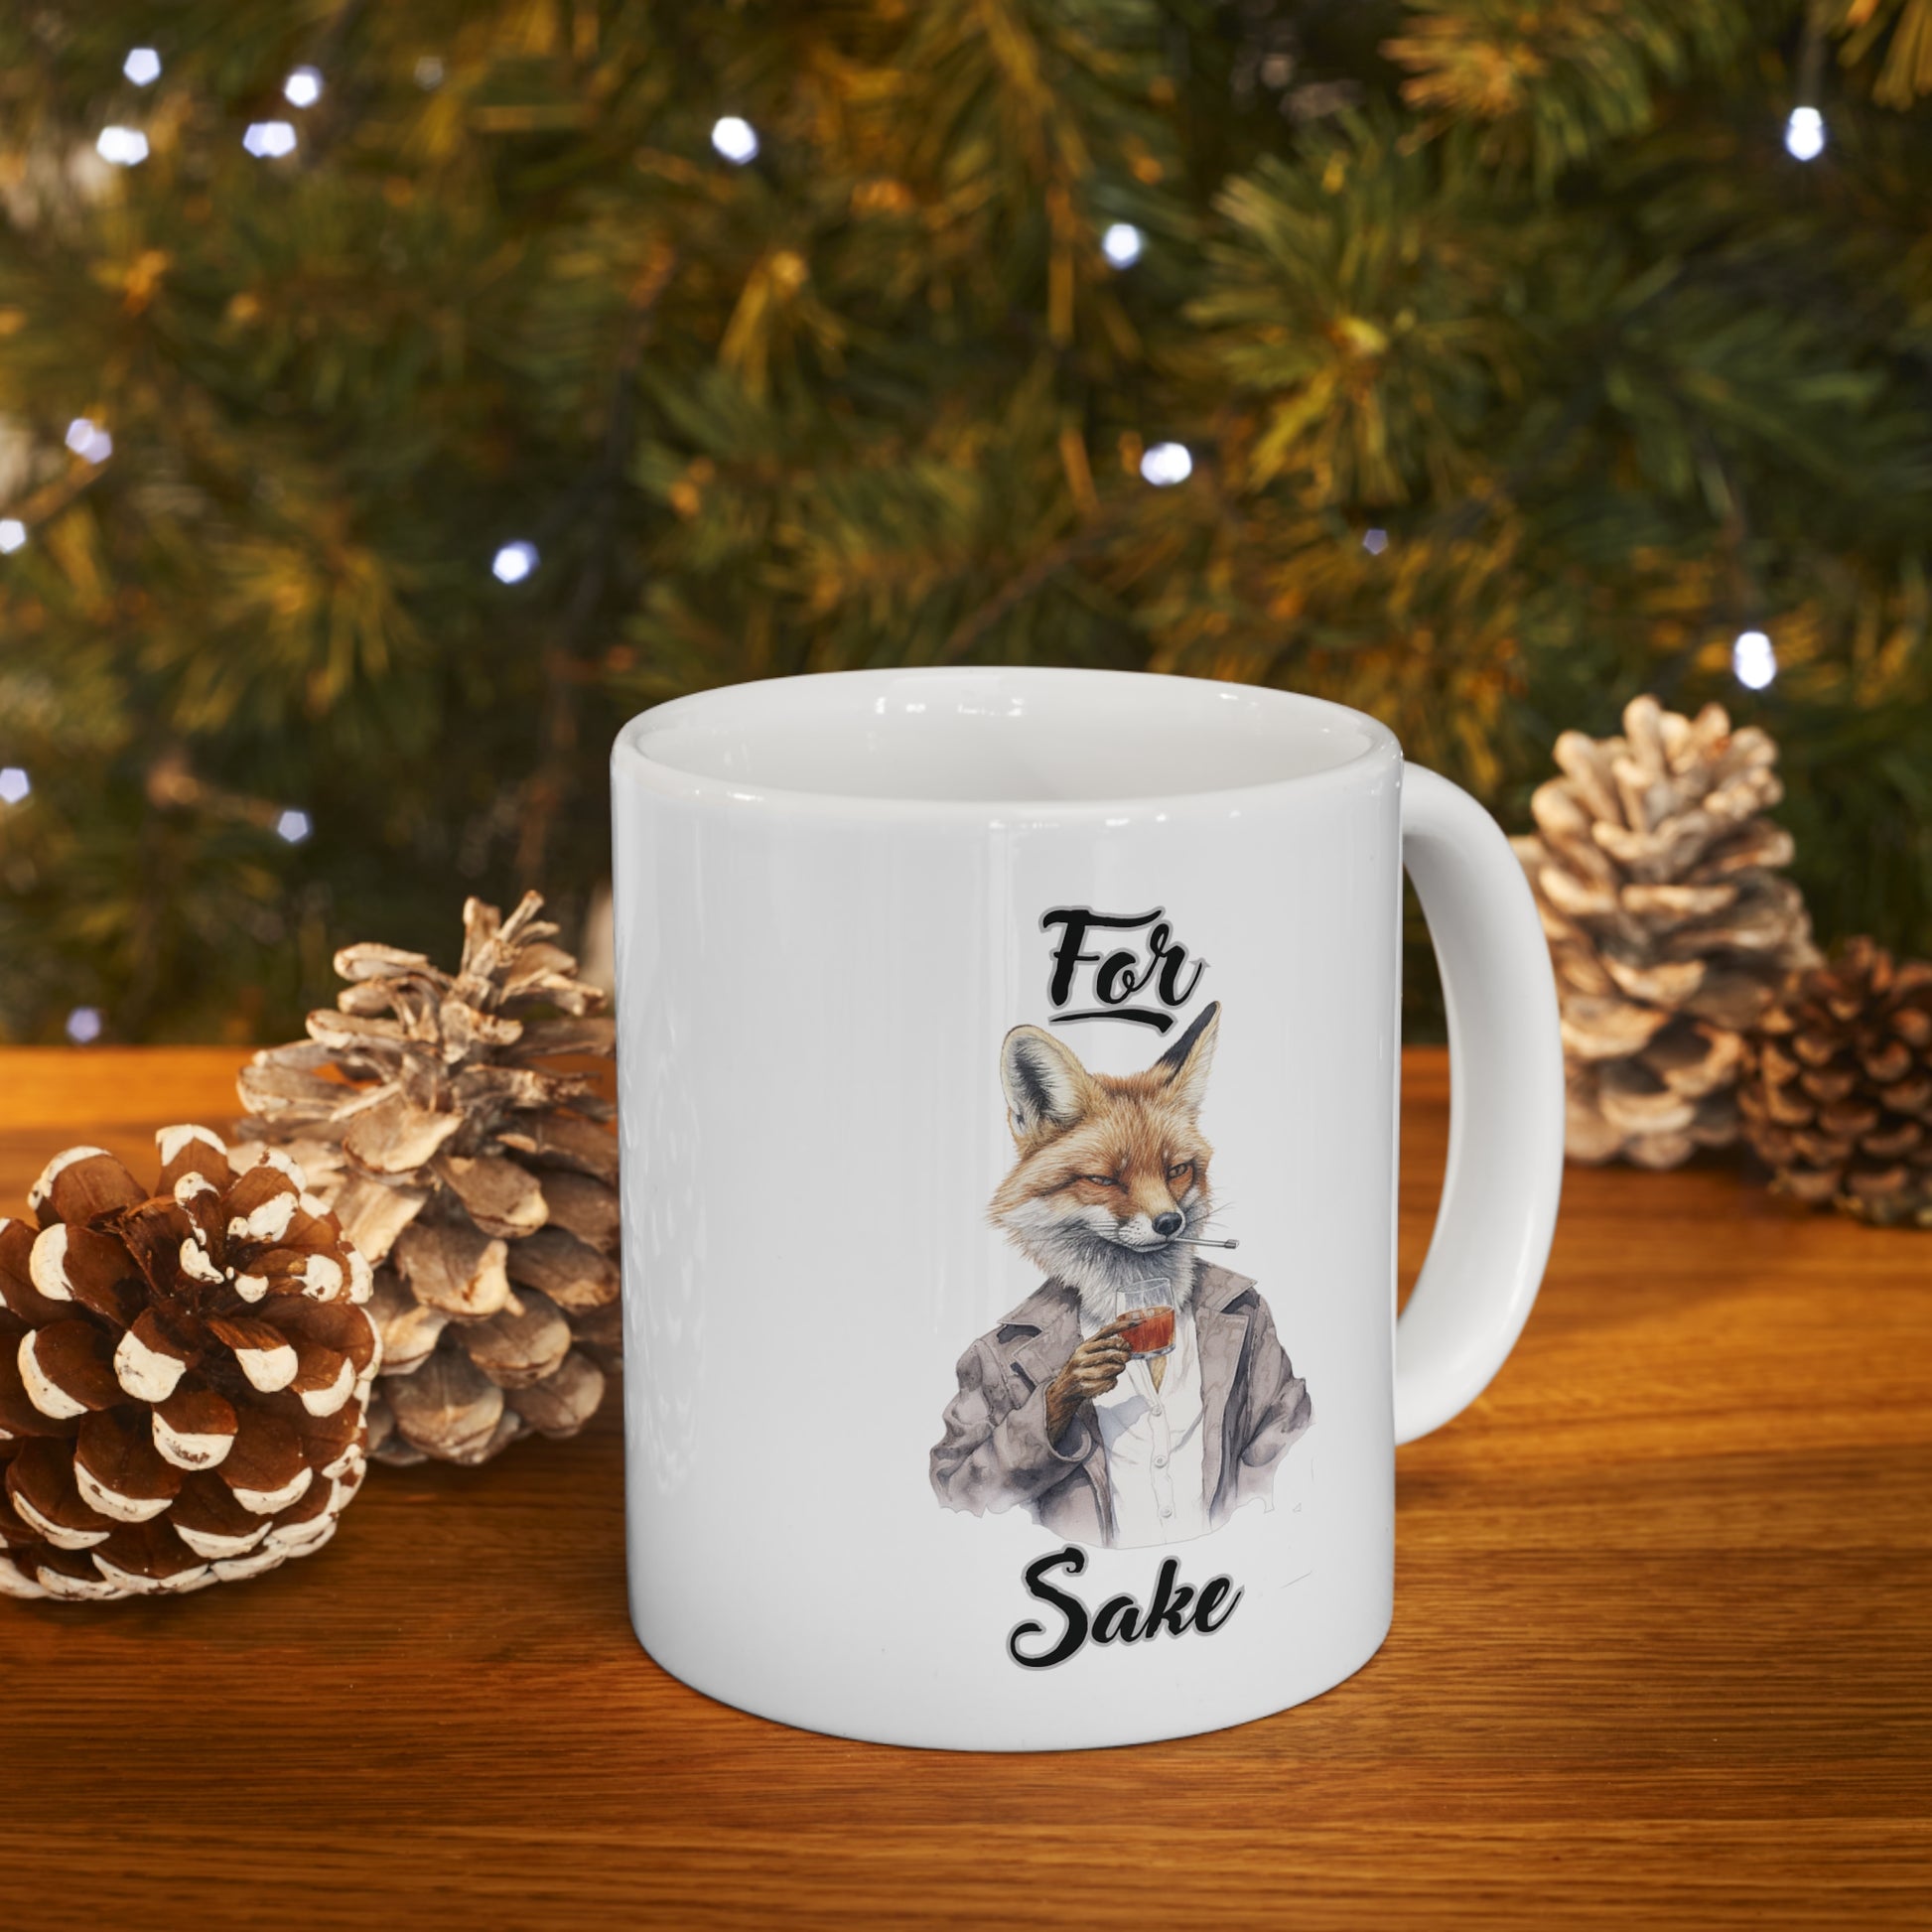 For Fox Sake: Fox Coffee Mug with Sayings - Funny Mug for Coffee Lovers, 11oz Sarcastic Mug Mug 11oz  